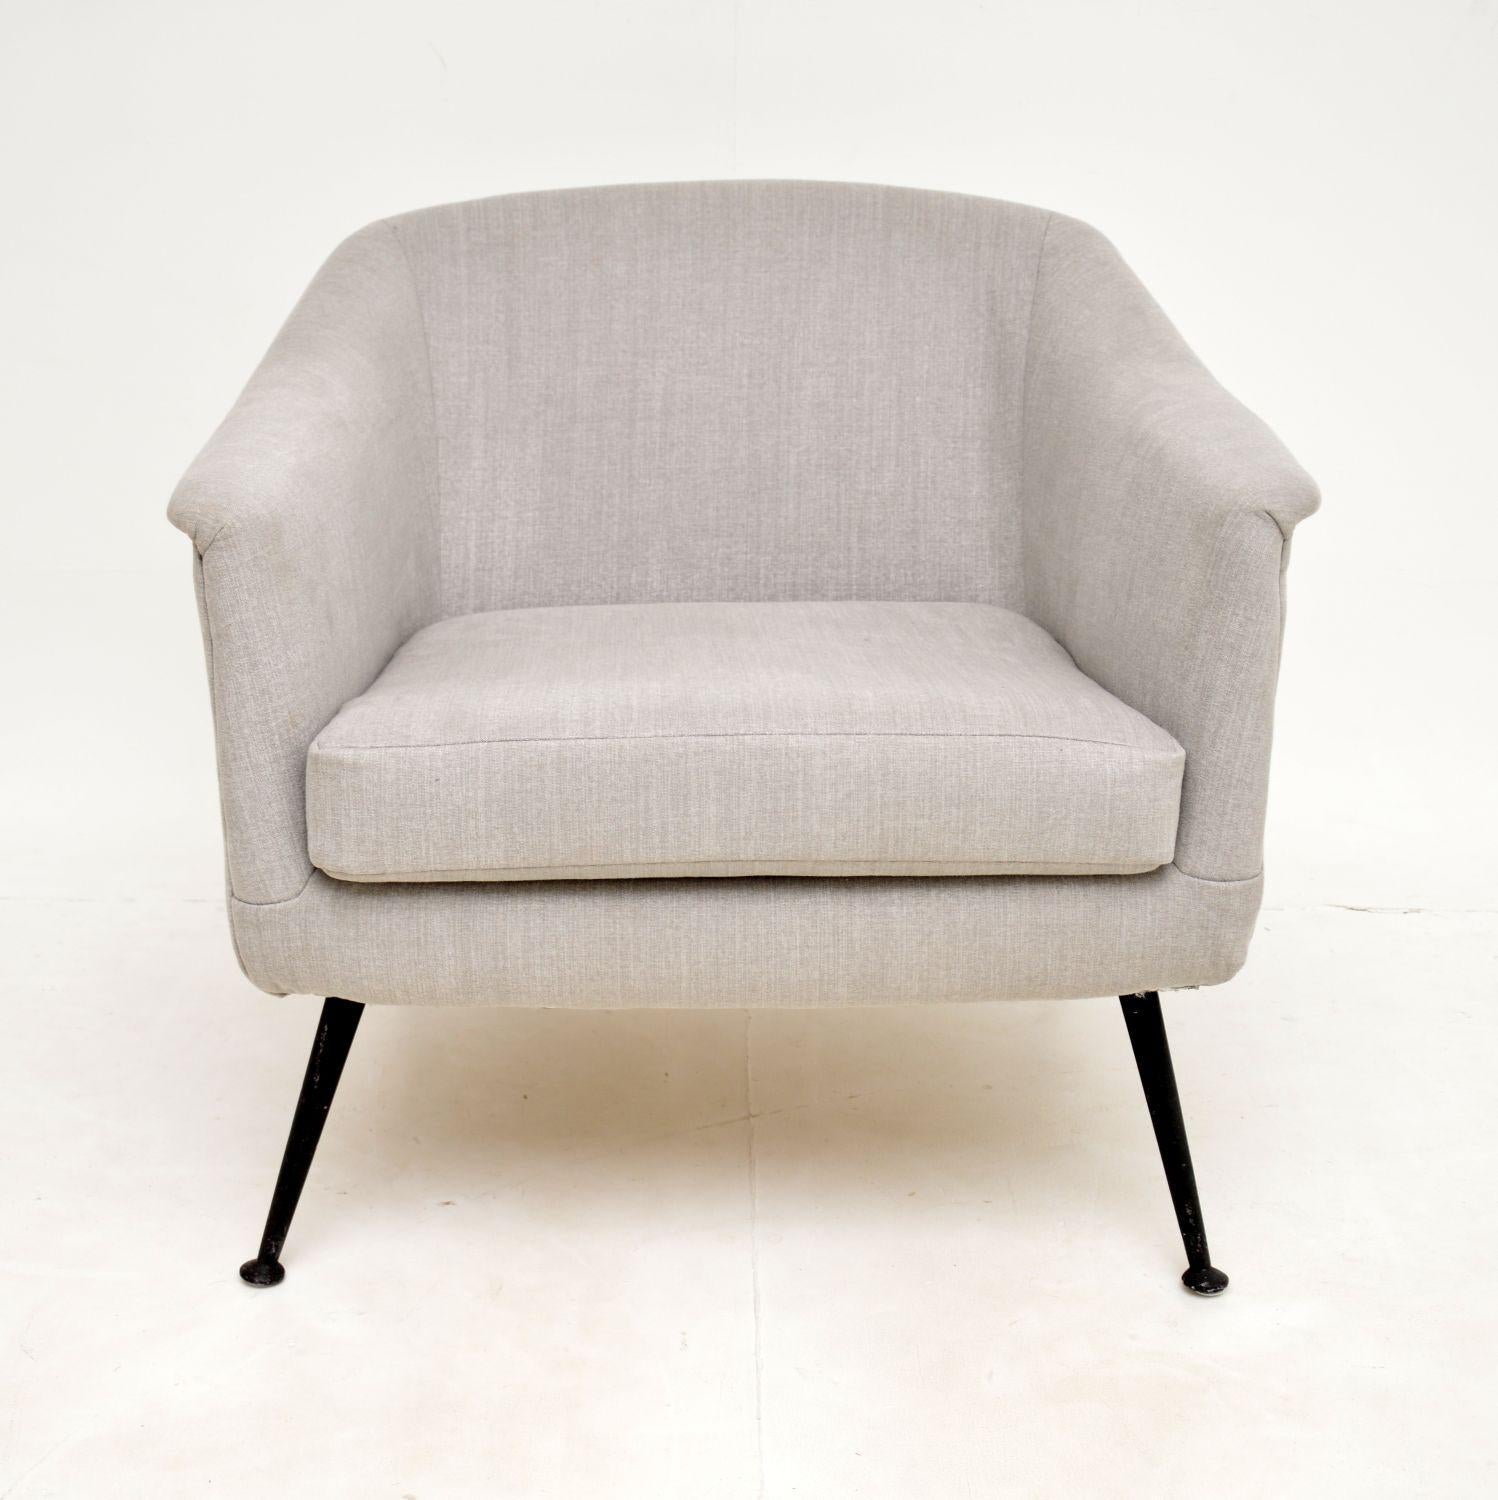 Ein sehr stilvoller und sehr bequemer Vintage-Sessel. Sie wurde in Frankreich hergestellt und stammt aus den 1960-1970er Jahren.

Die Qualität ist hervorragend, es hat einen fantastischen Stil und ist extrem gut gemacht. Er steht auf Beinen aus